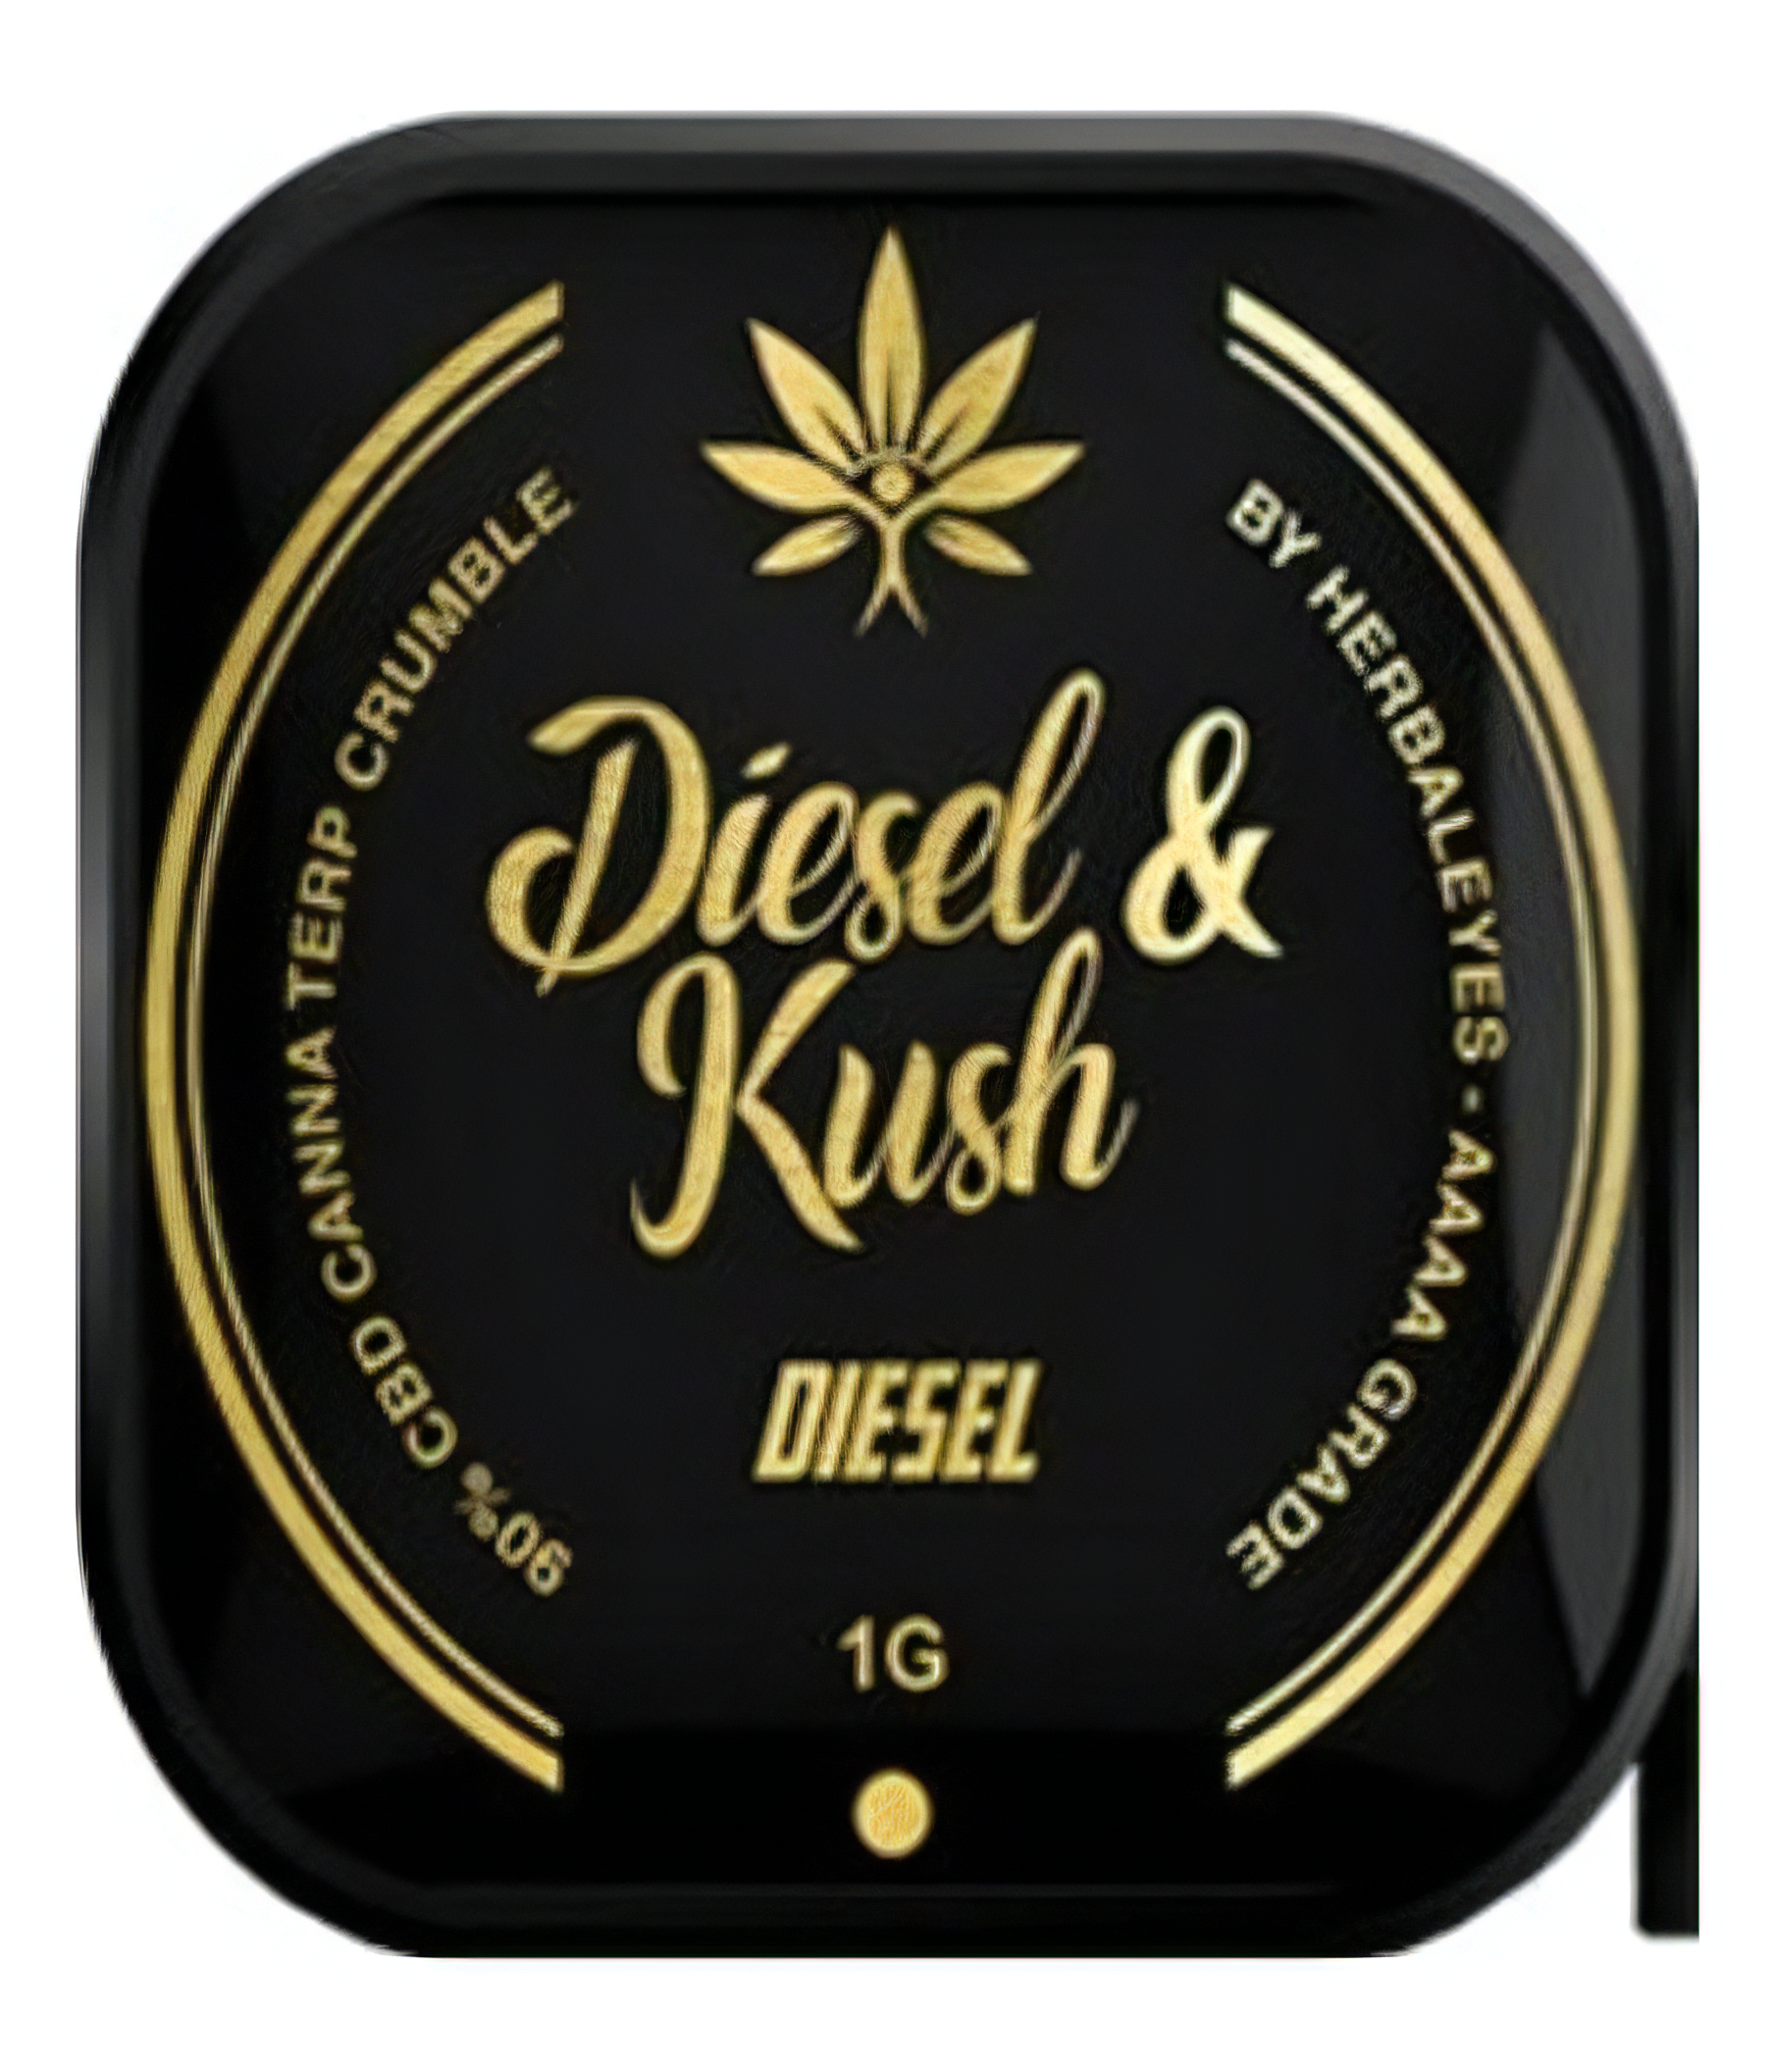 Diesel & Kush